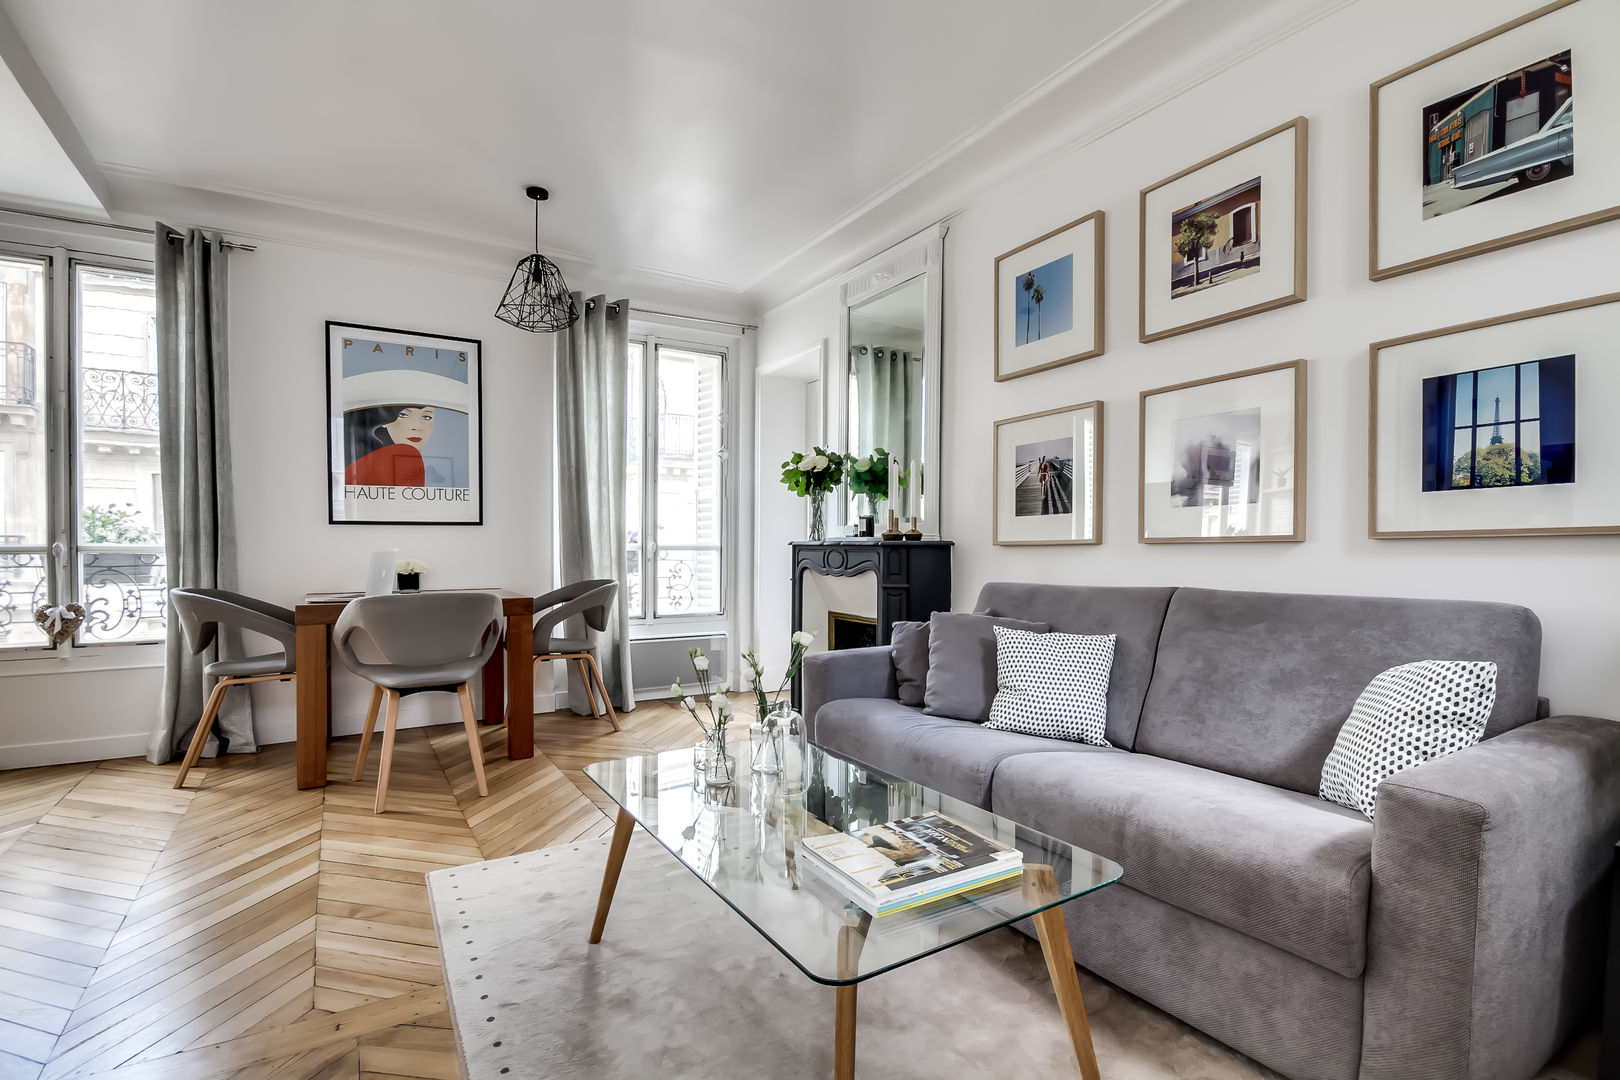 Le charme parisien, bypierrepetit bypierrepetit Scandinavian style living room